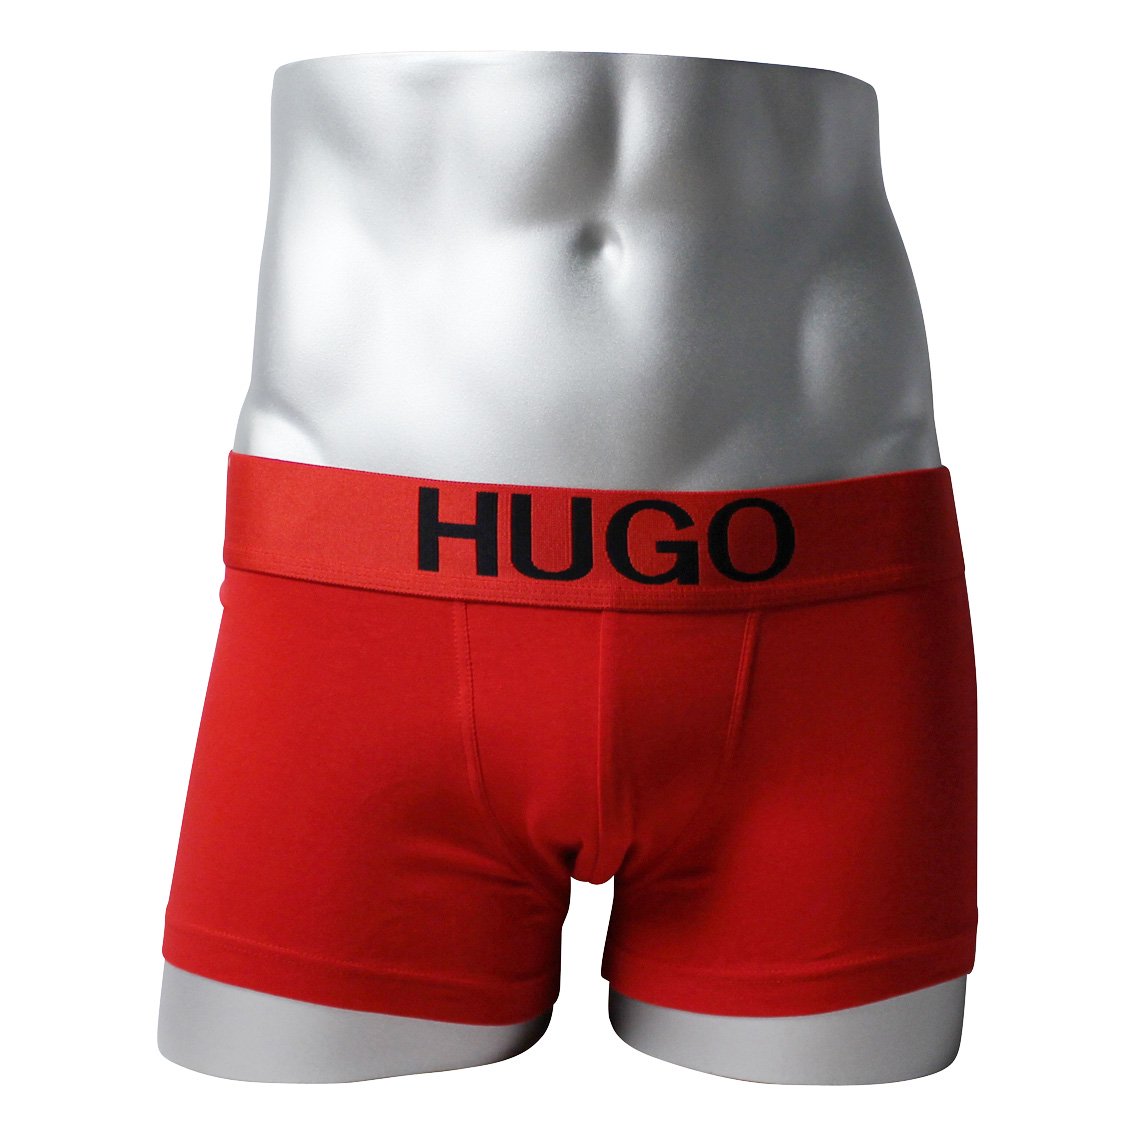 [50428876-693] HUGO BOSS ヒューゴボス ボクサーパンツ メンズ アンダーウェア インナー 男性 下着 ブランド おすすめ 人気 プレゼント